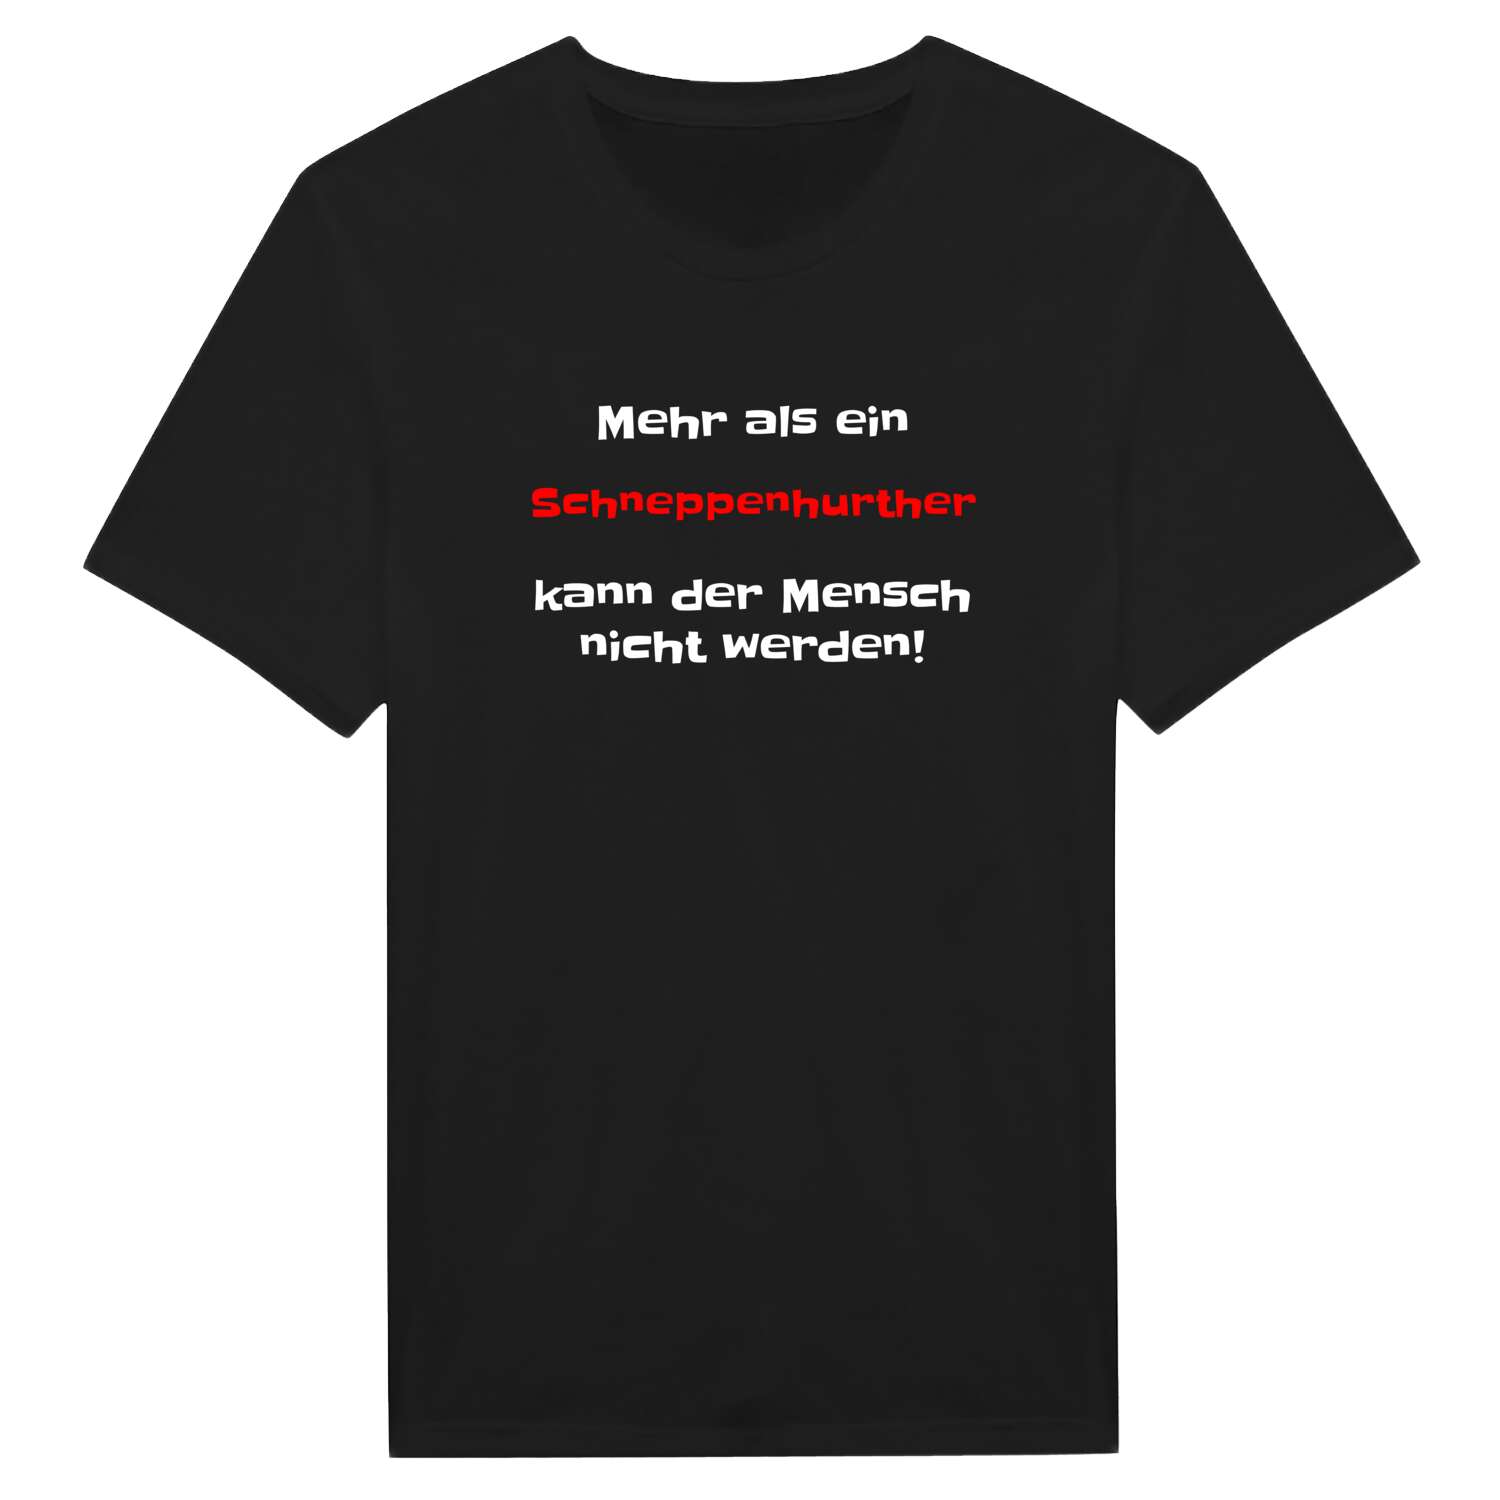 Schneppenhurth T-Shirt »Mehr als ein«